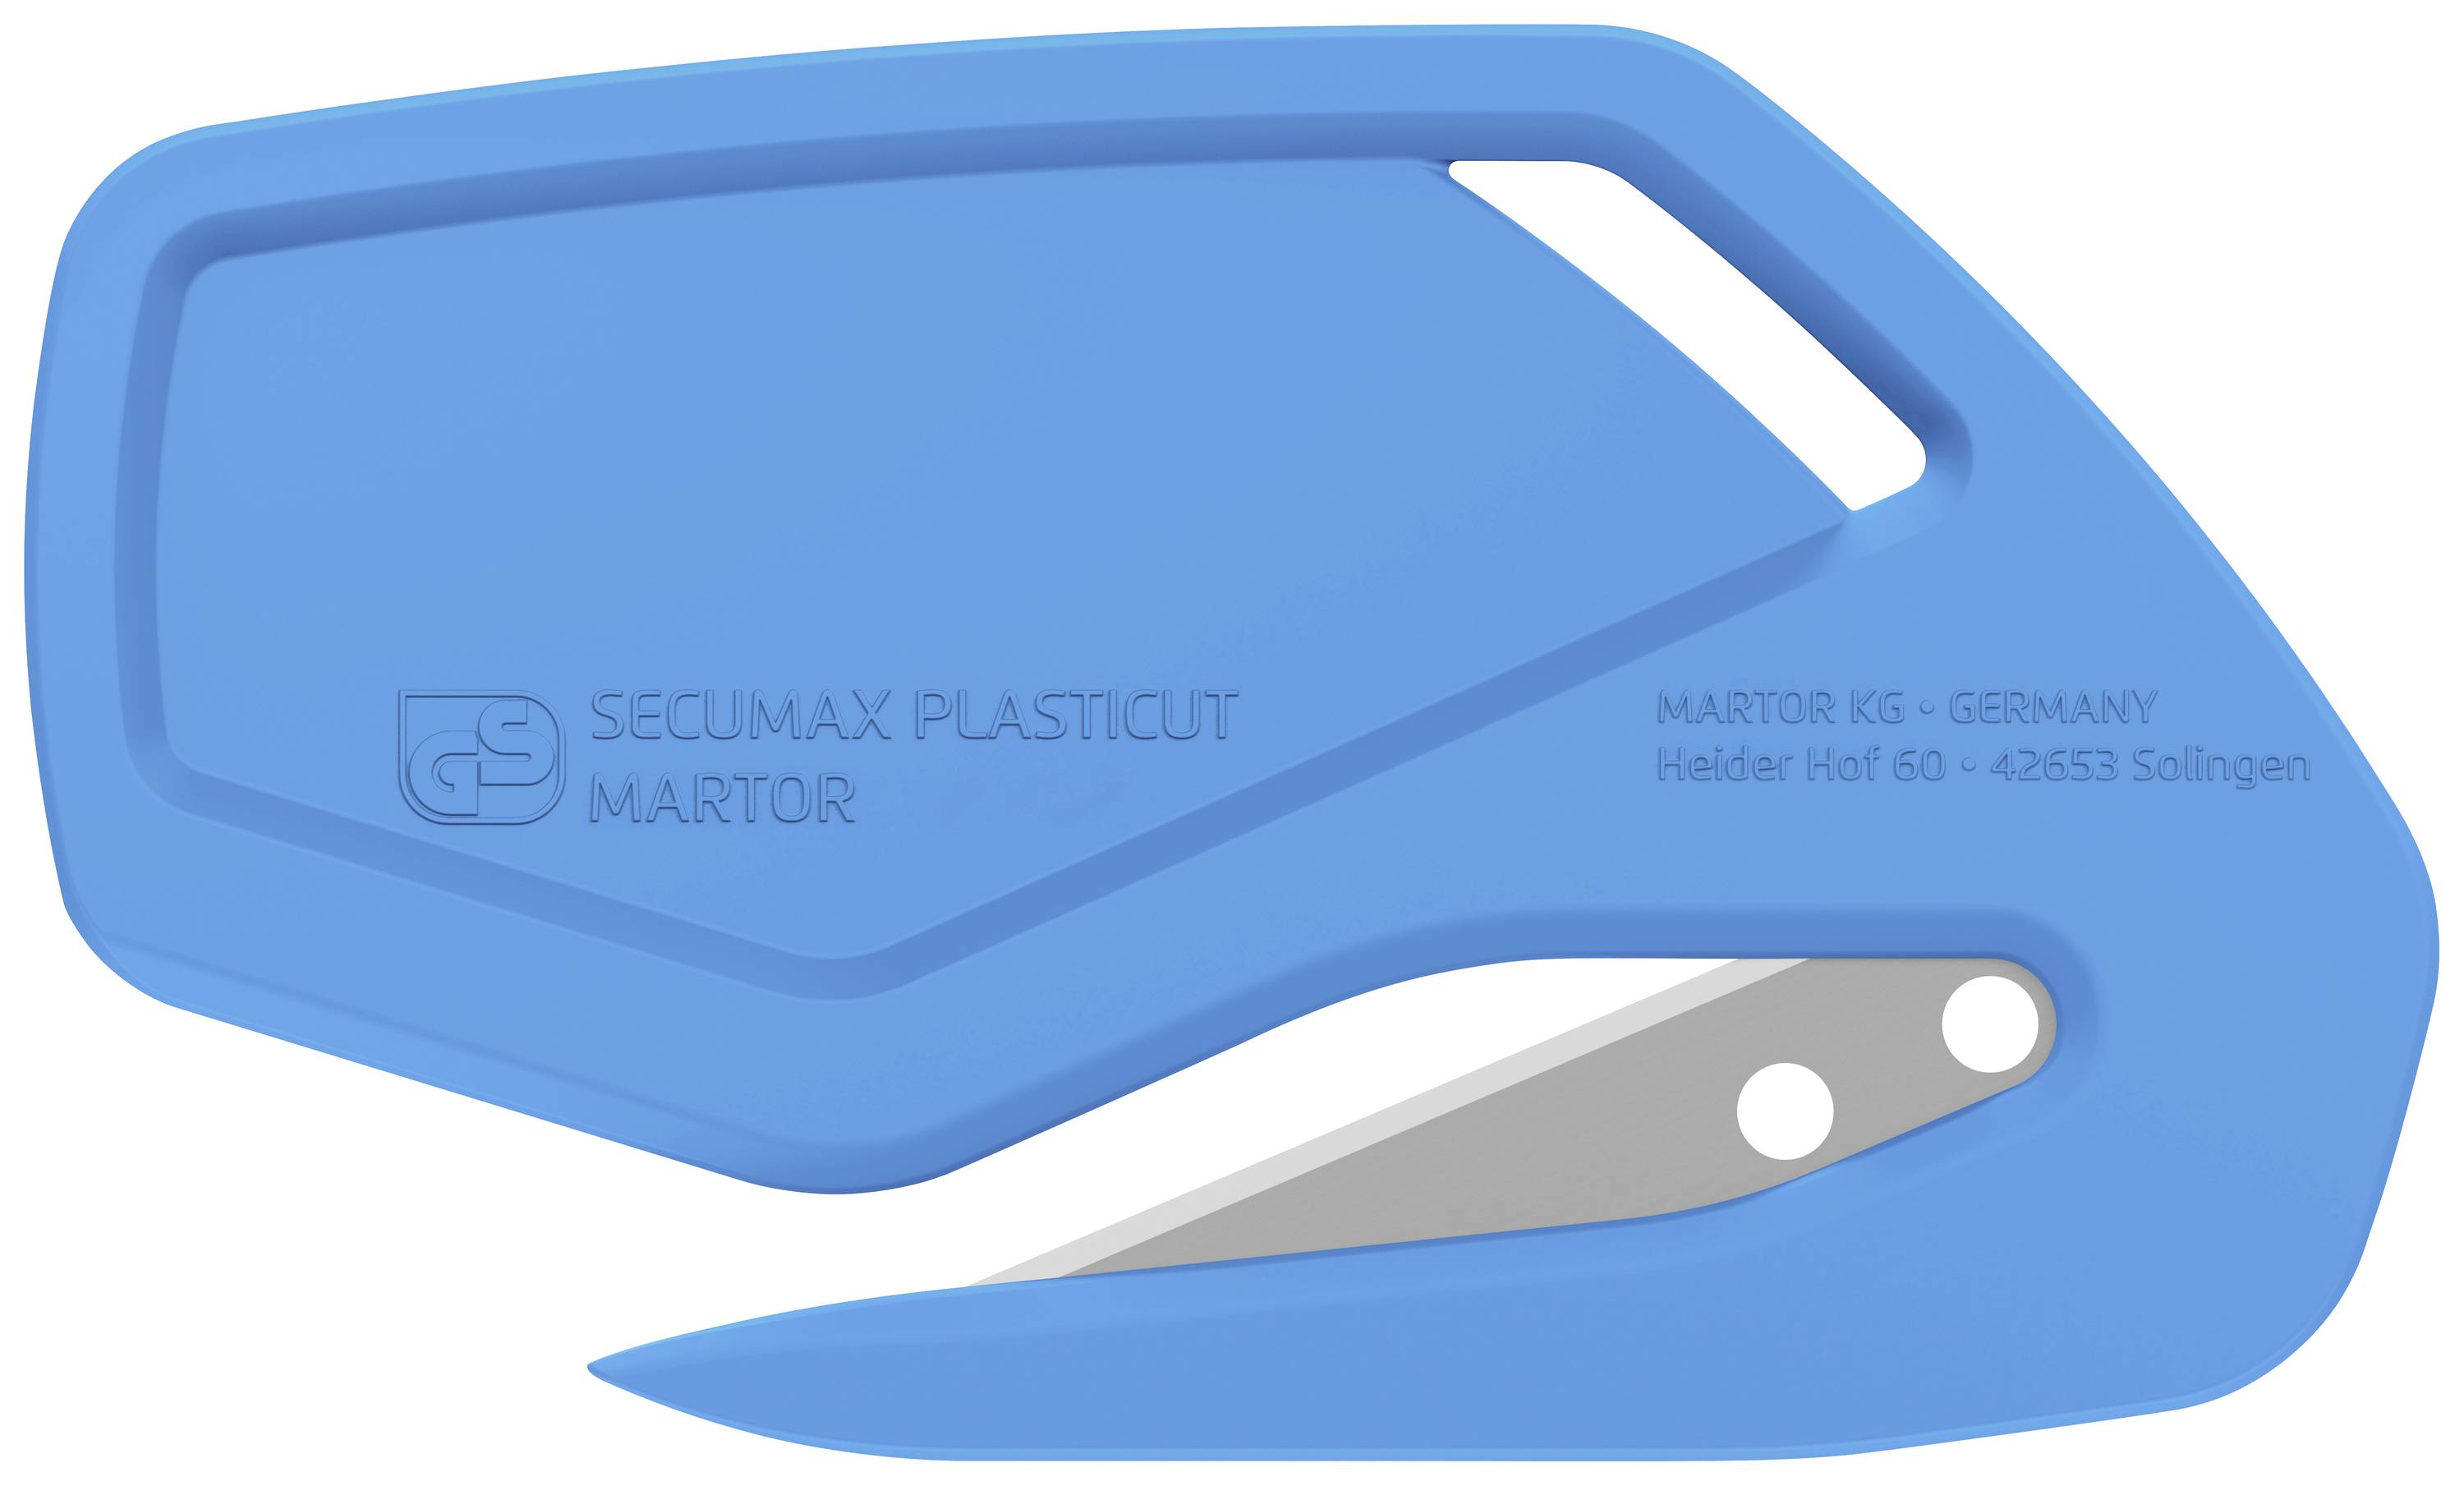 MARTOR 46912.16 Sicherheitsmesser SECUMAX PLASTICUT 100 St.